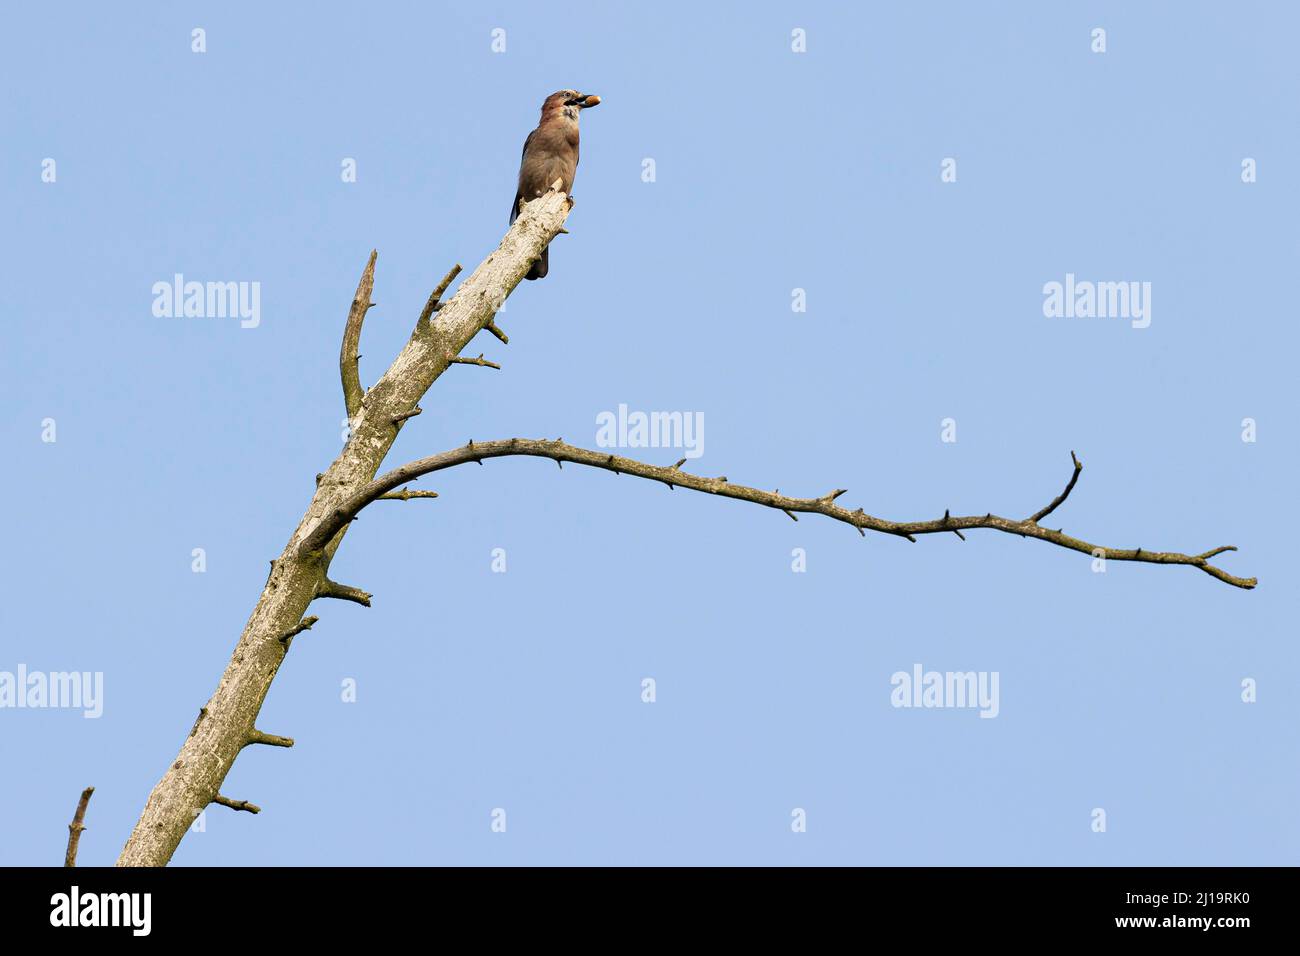 eurasischer eichelhäher (Garrulus glandarius) mit Eichel im Schnabel auf einem Ast im toten Baum sitzend, JuodkrantÄ –, Kurische Nehrung, Klaipeda, Litauen Stockfoto